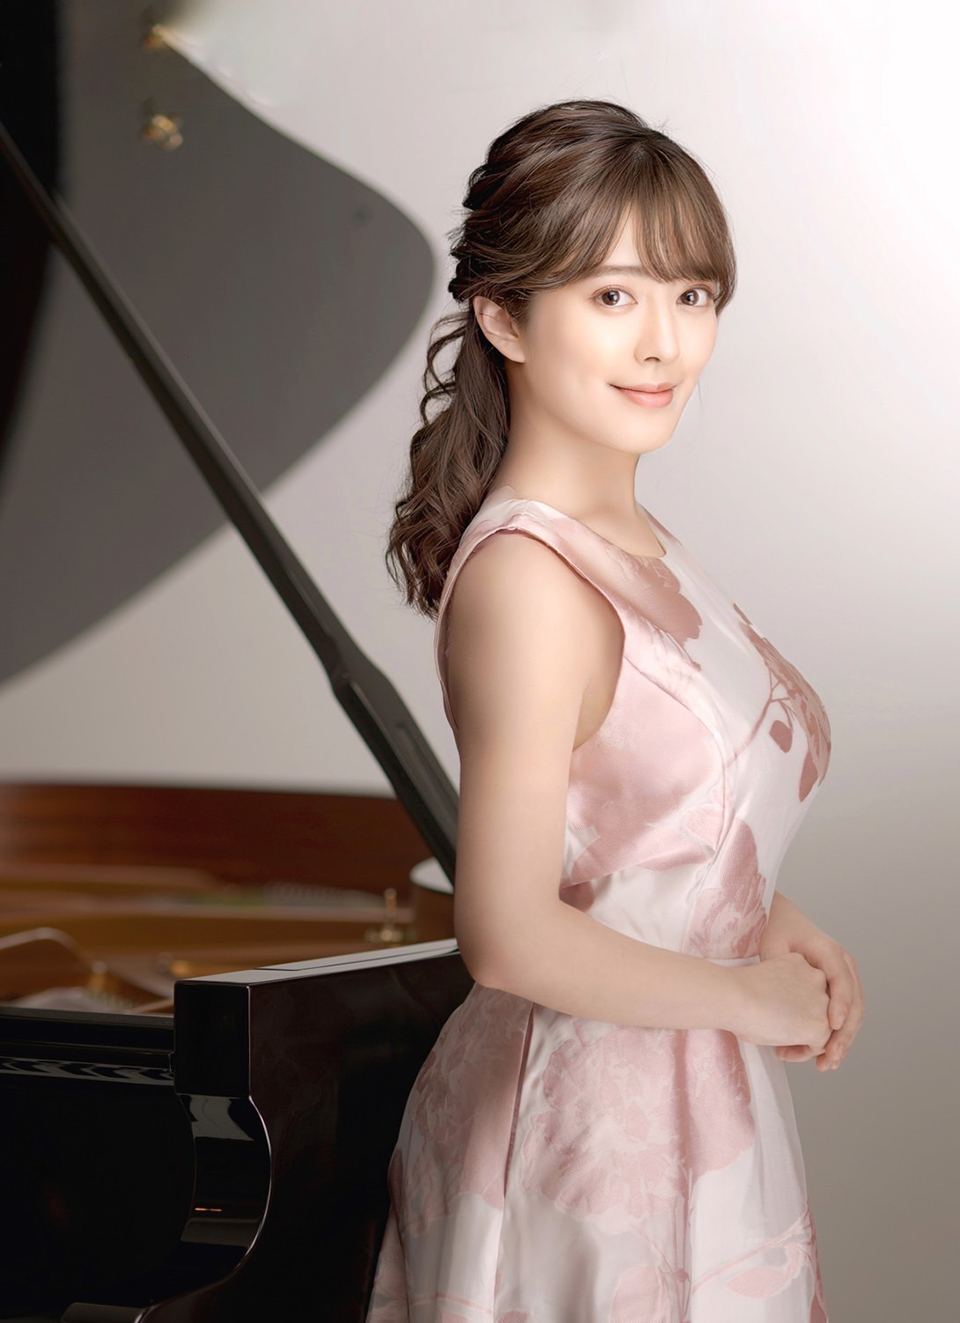 nanaha / pianist